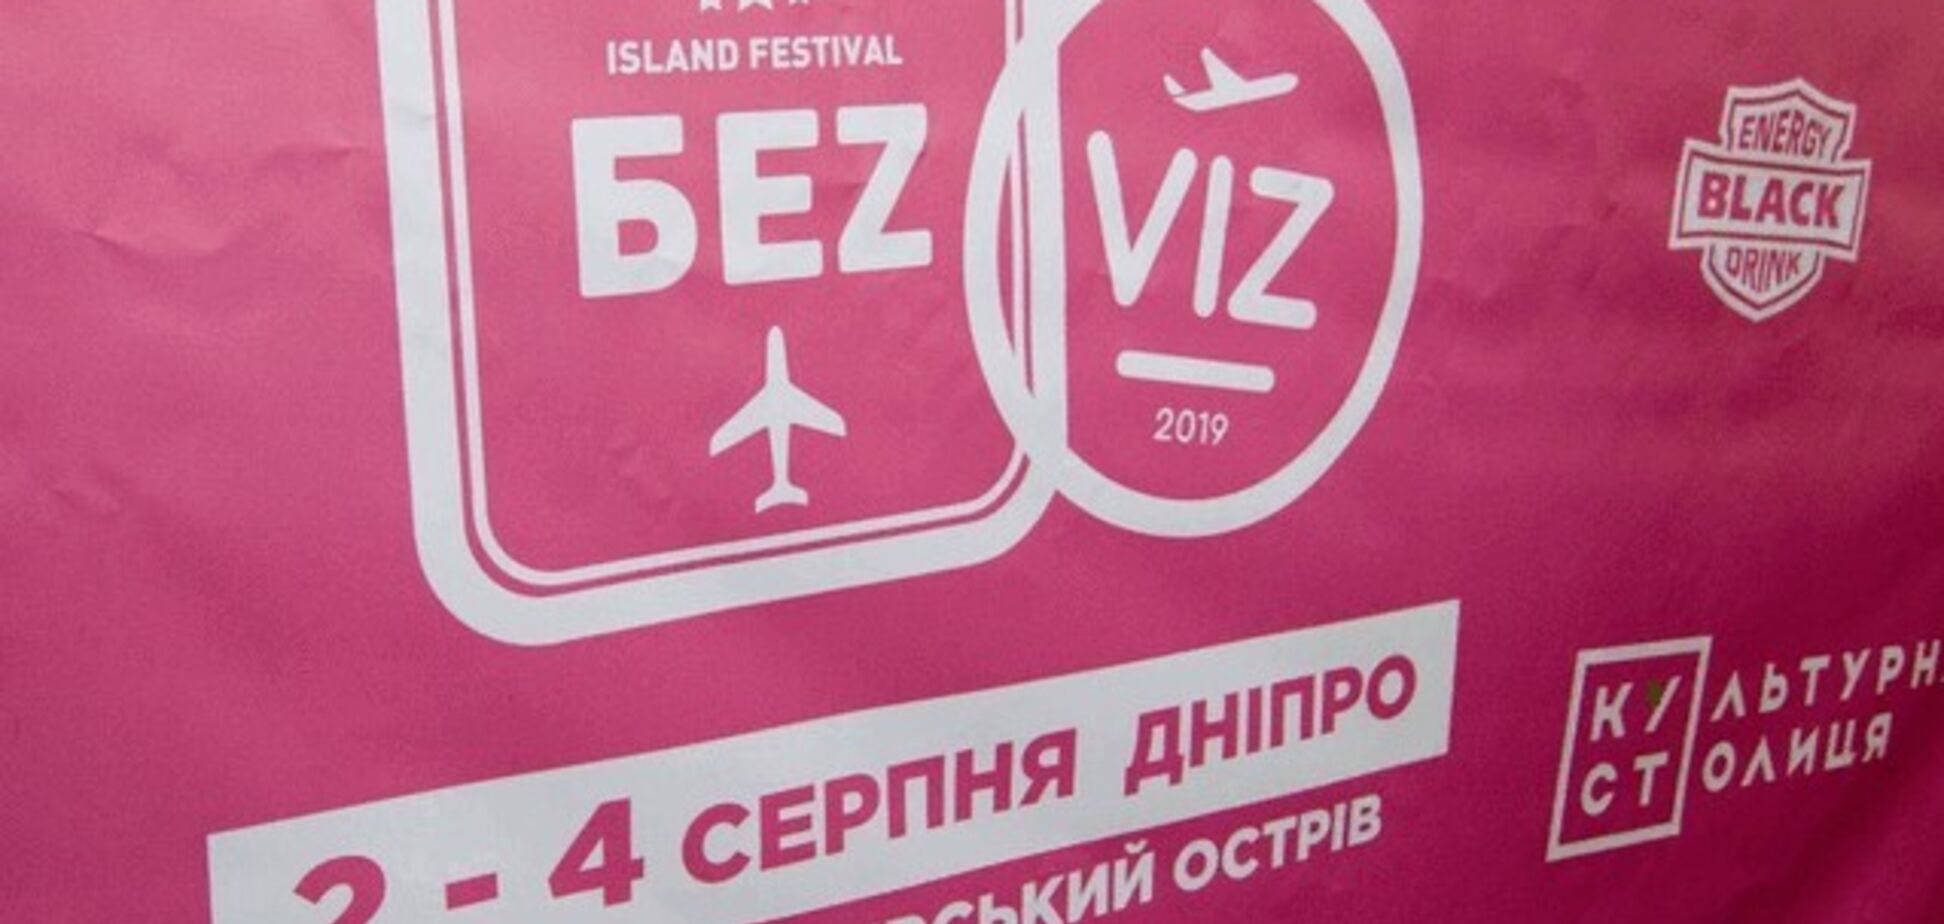 'Lordi', 'Kadebostani' и 'Skindred': в Днепре состоится музыкальный фестиваль 'БеzViz'